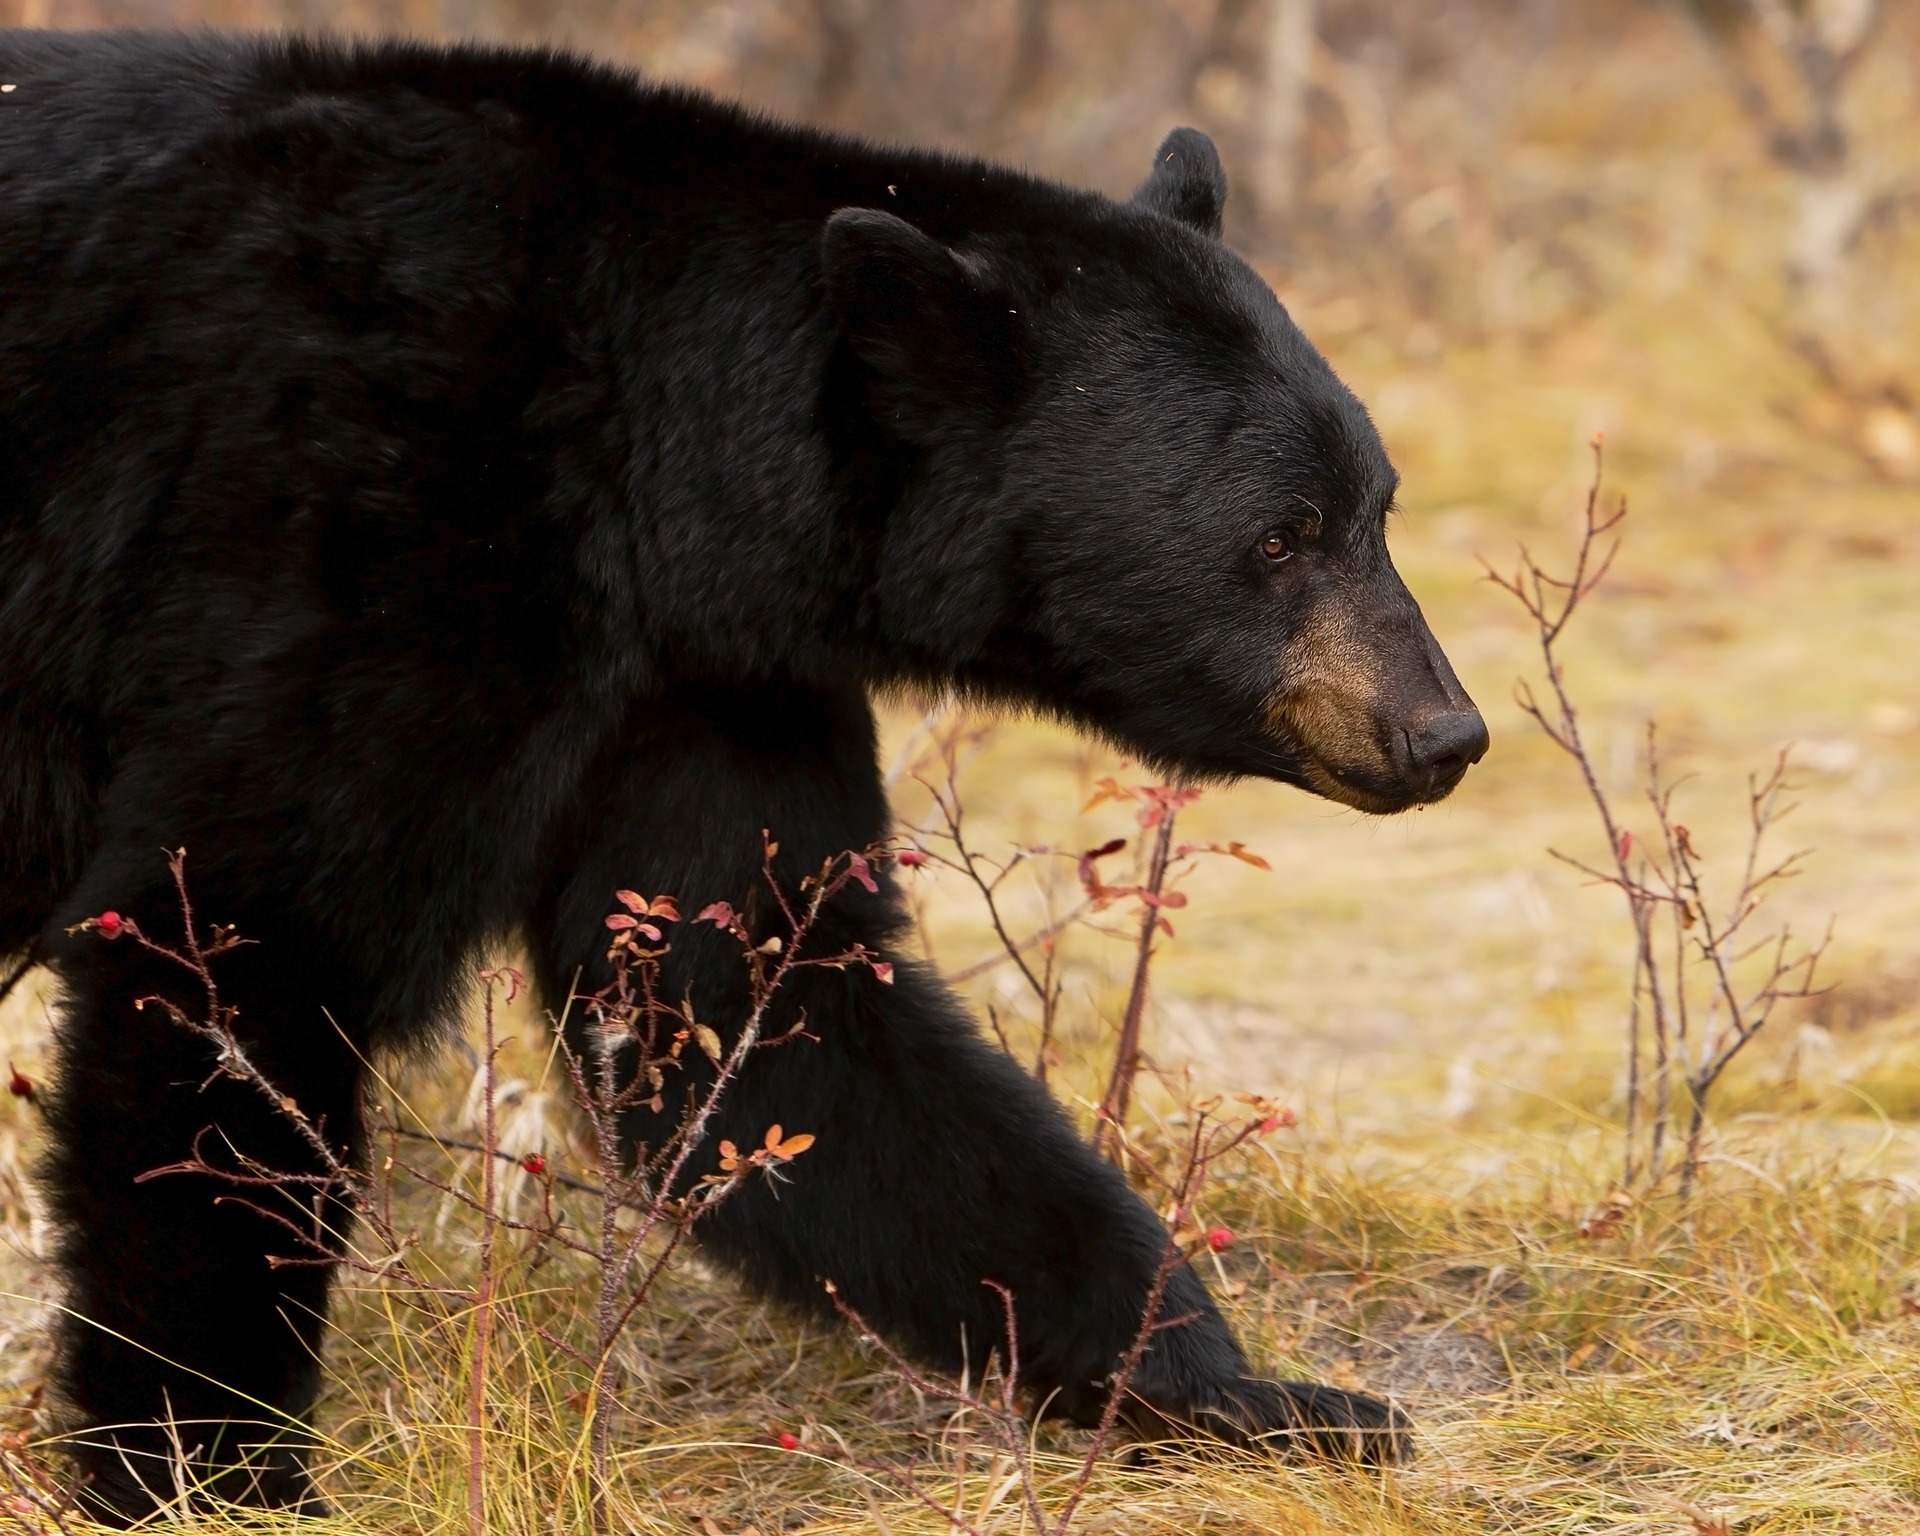 科罗拉多州黑熊袭击事件导致当局对三只熊实施安乐死。